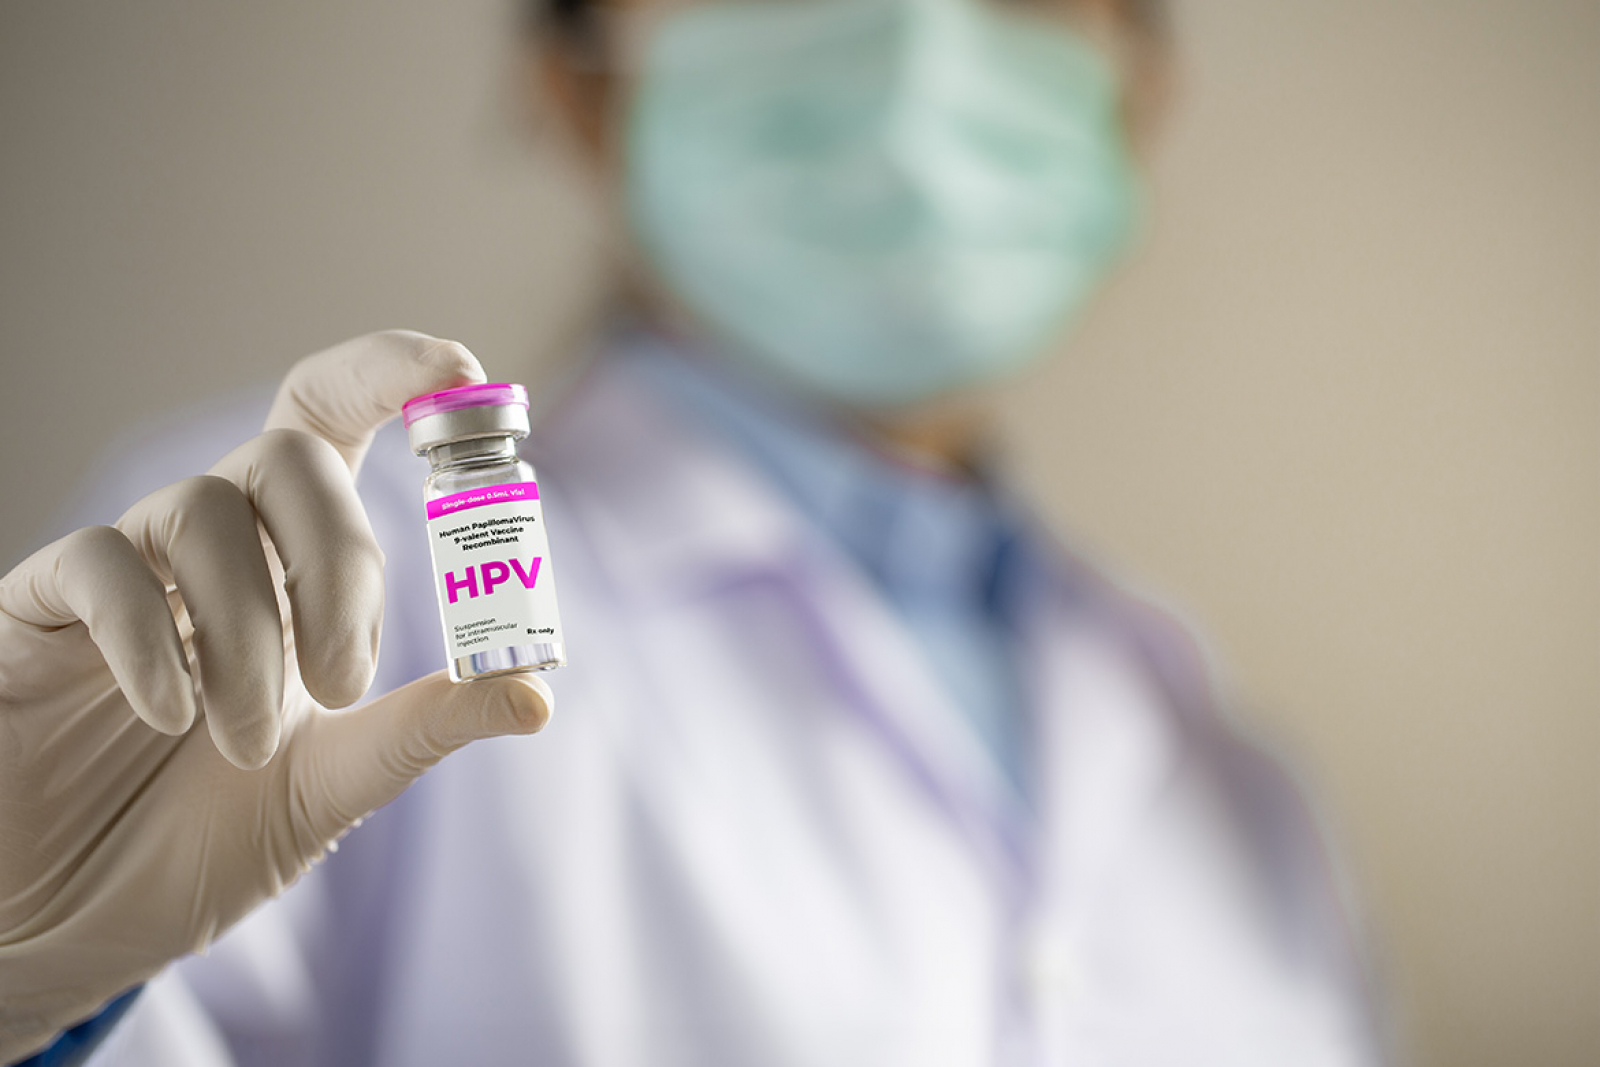 Cobertura vacinal contra HPV em Goiás se mantém abaixo de 30%